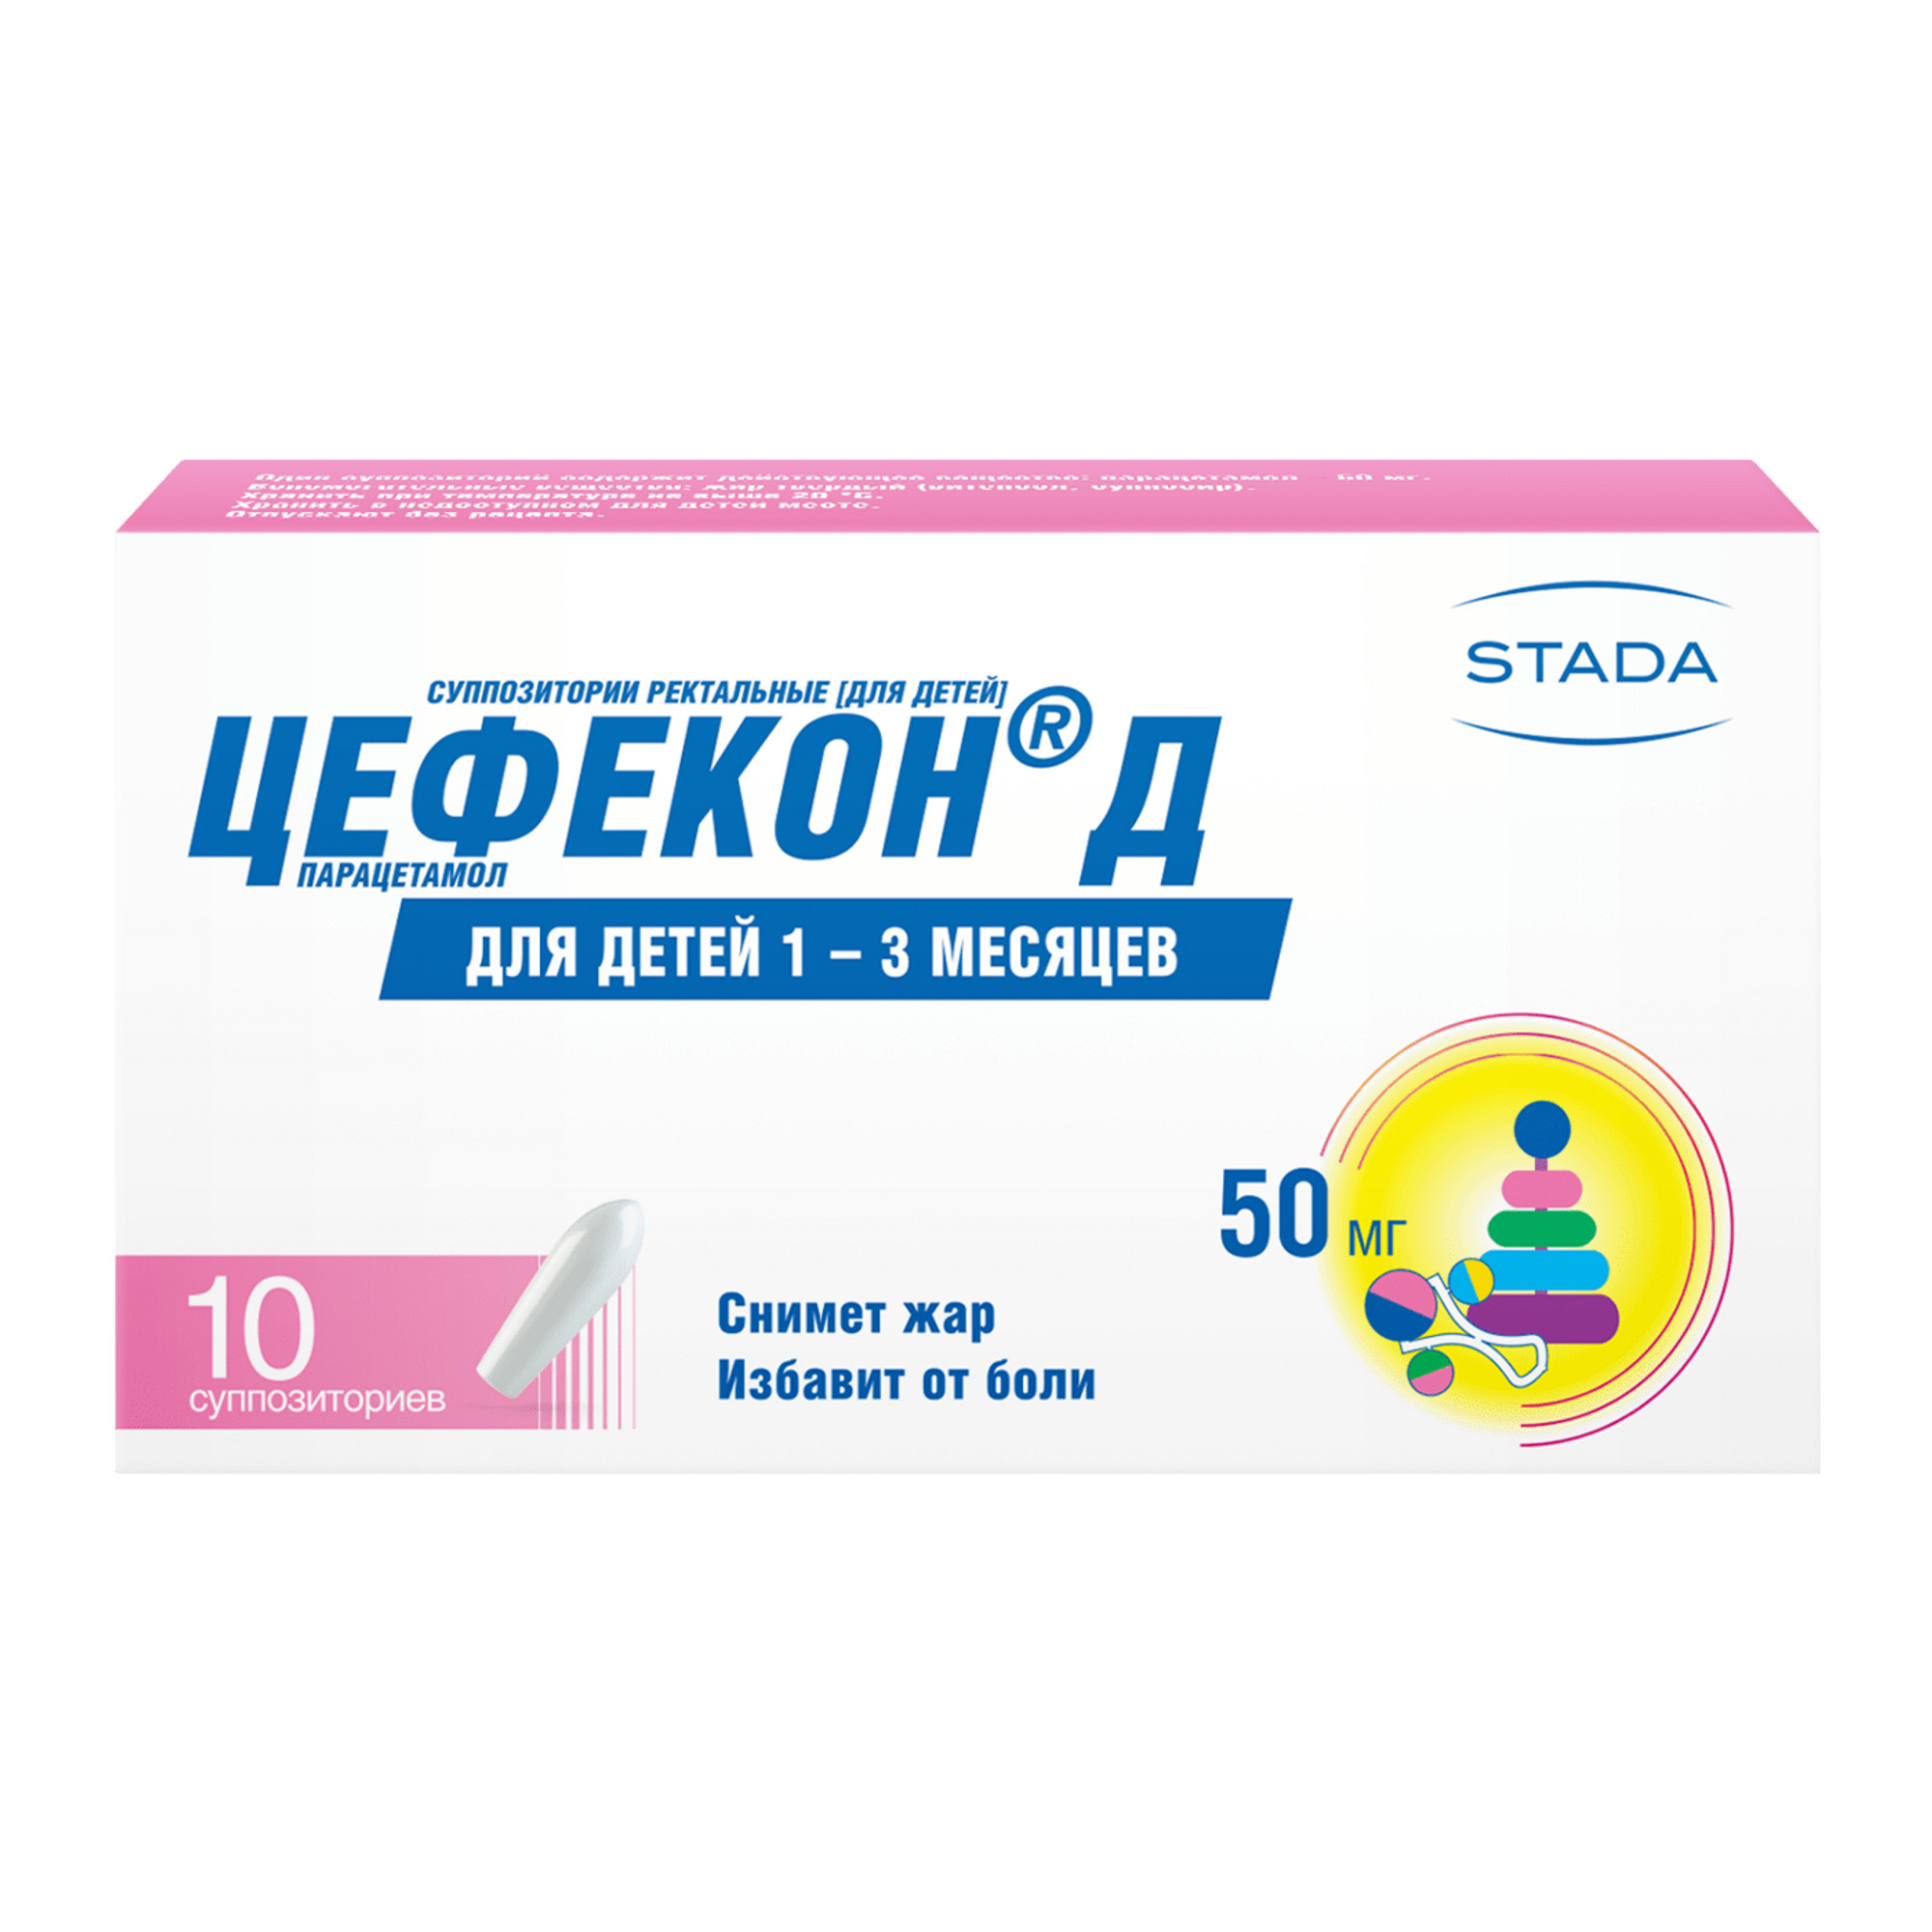 Цефекон Д, суппозитории ректальные 50 мг, 10 шт.